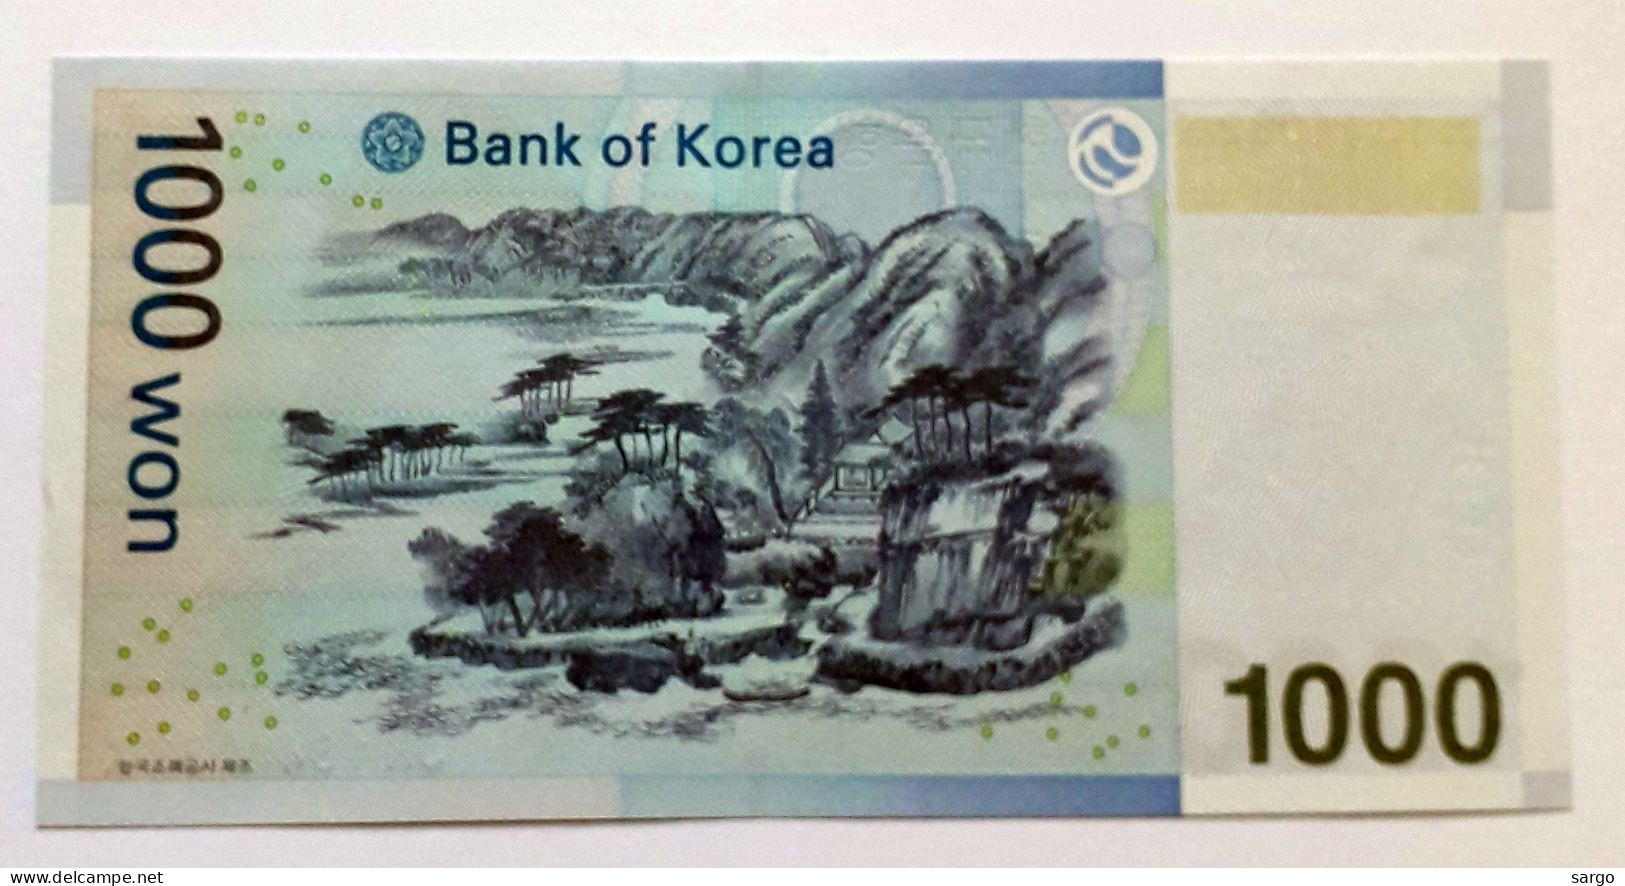 SOUTH KOREA - 1.000 WON  - 2007  - UNC - P 54 - BANKNOTES - PAPER MONEY - CARTAMONETA - - Corée Du Sud